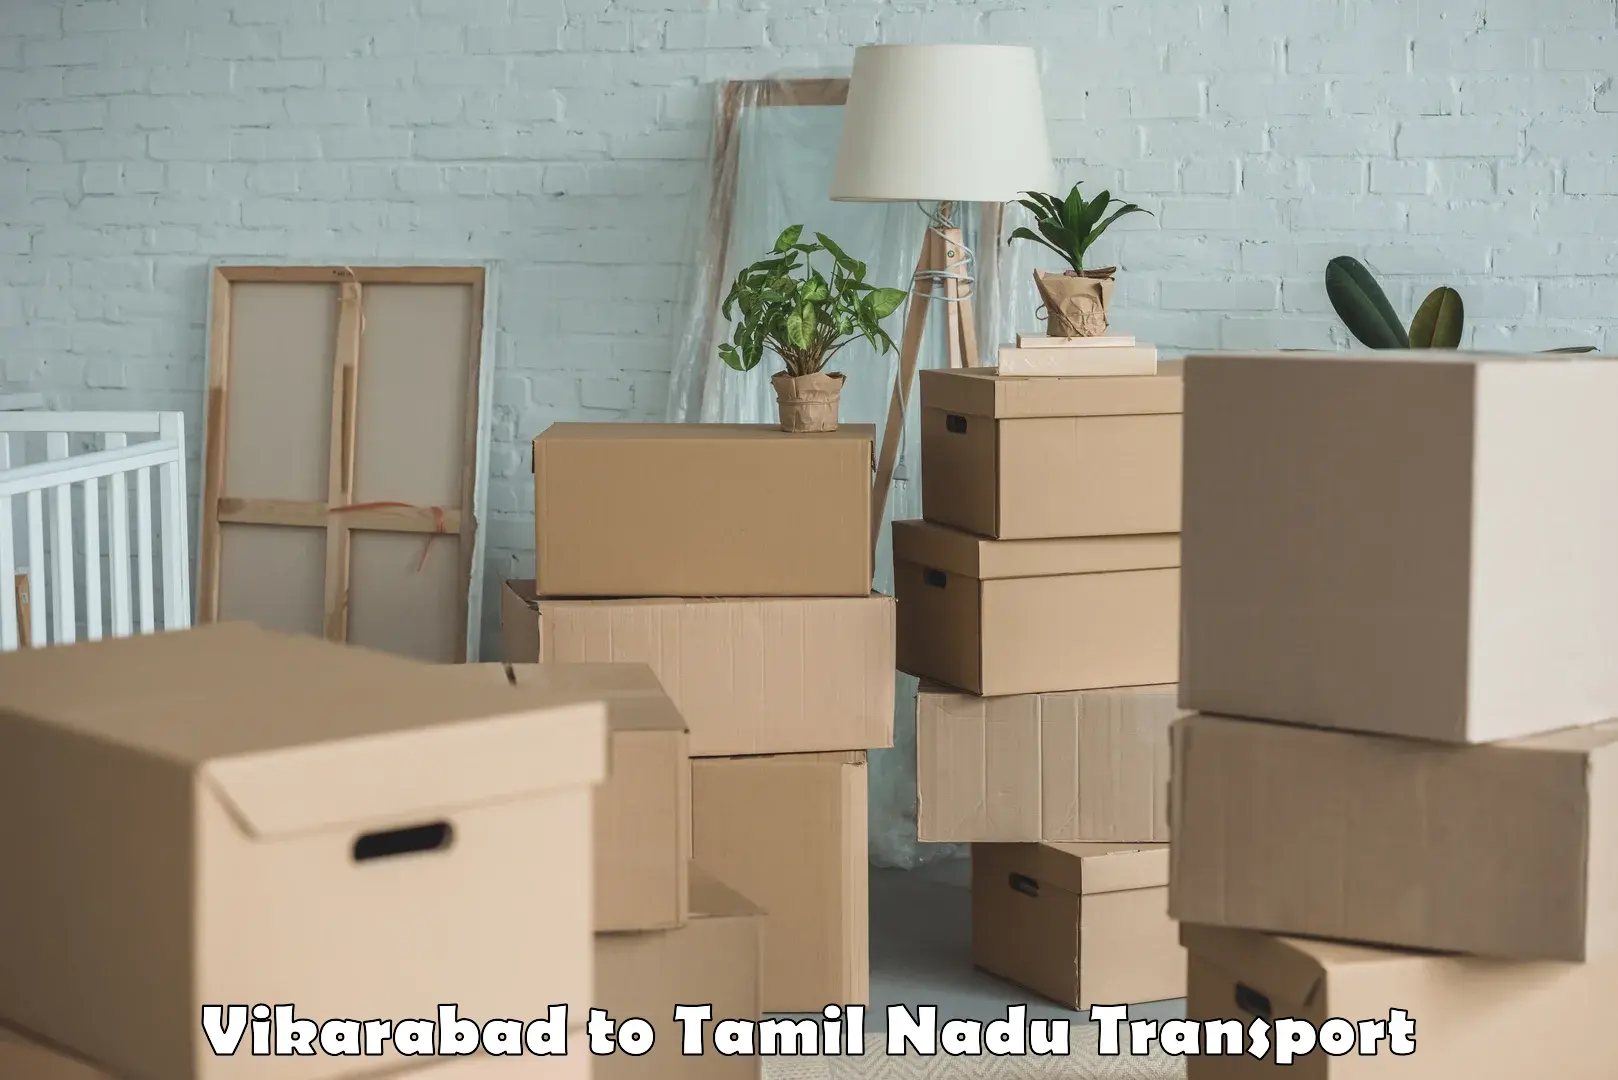 Furniture transport service Vikarabad to Perundurai